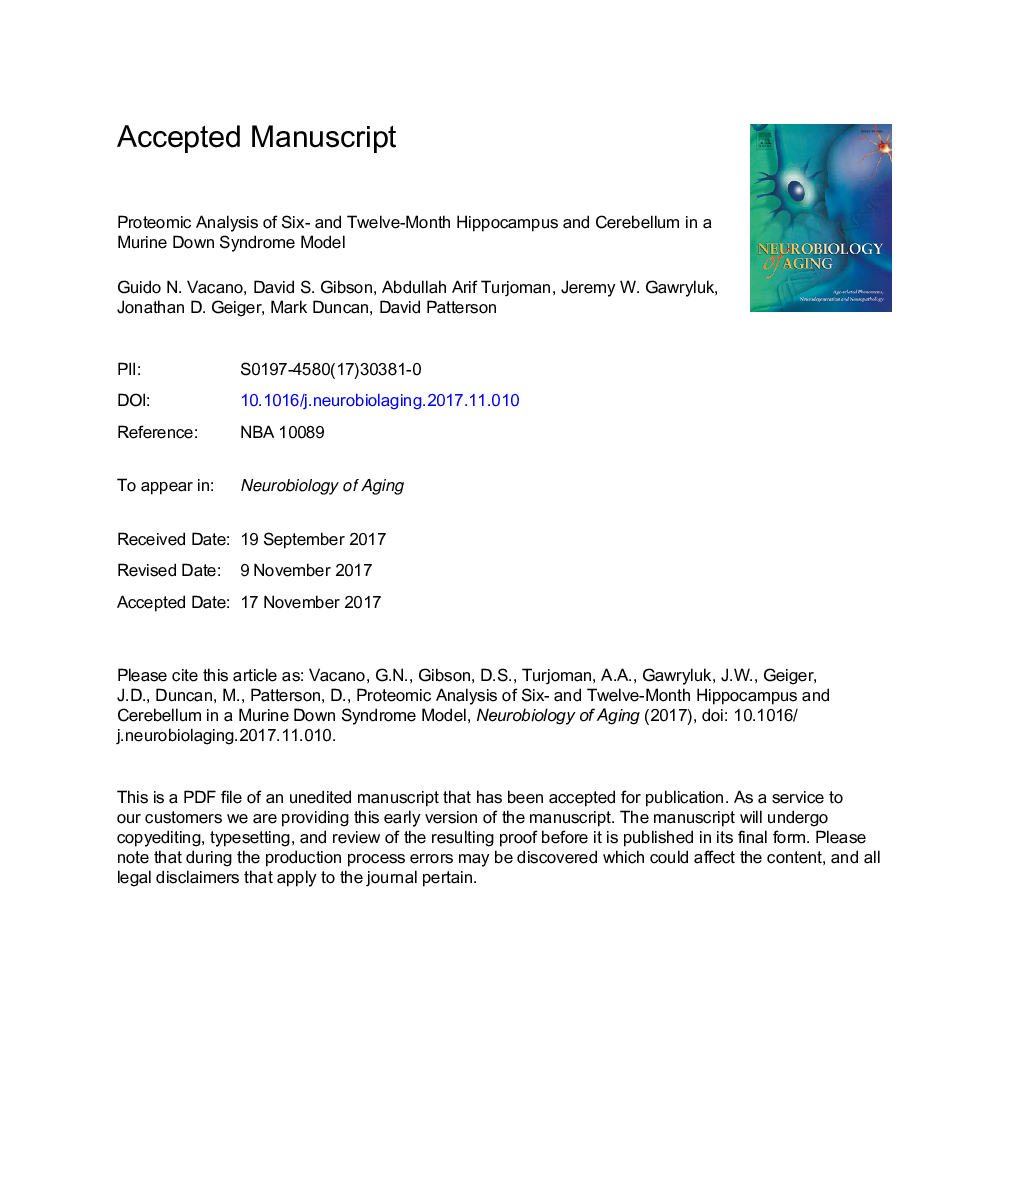 آنالیز پروتئومیکیک هیپوکامپ شش و دوازده ماهه و مخچه در یک مدل سندرم داون موش 